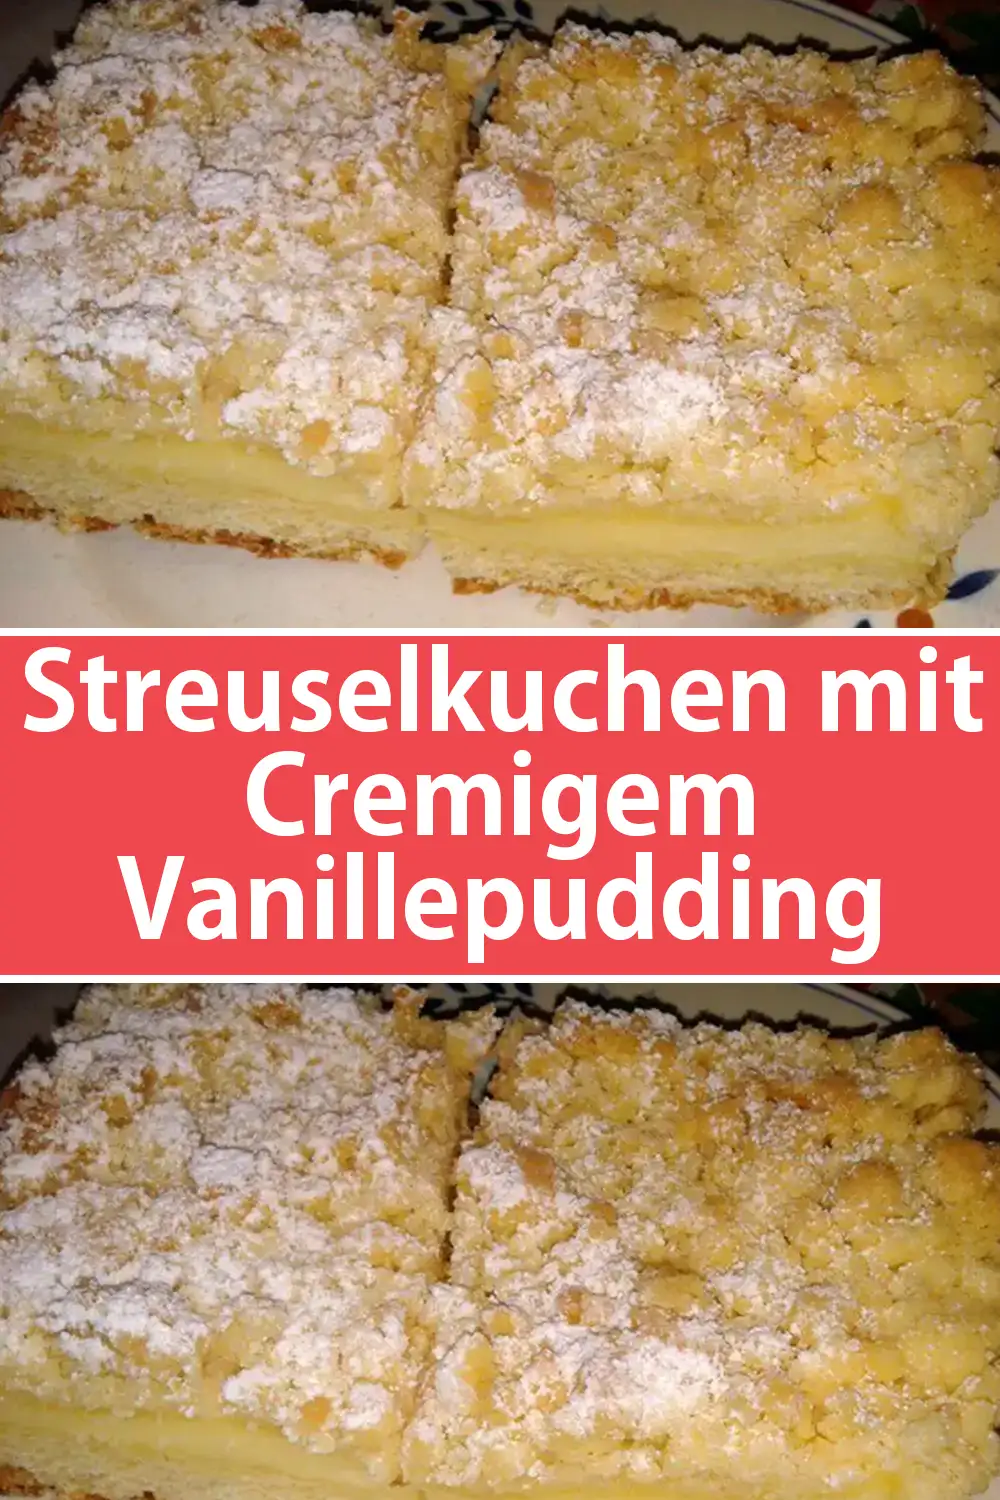 Streuselkuchen mit Cremigem Vanillepudding Rezept